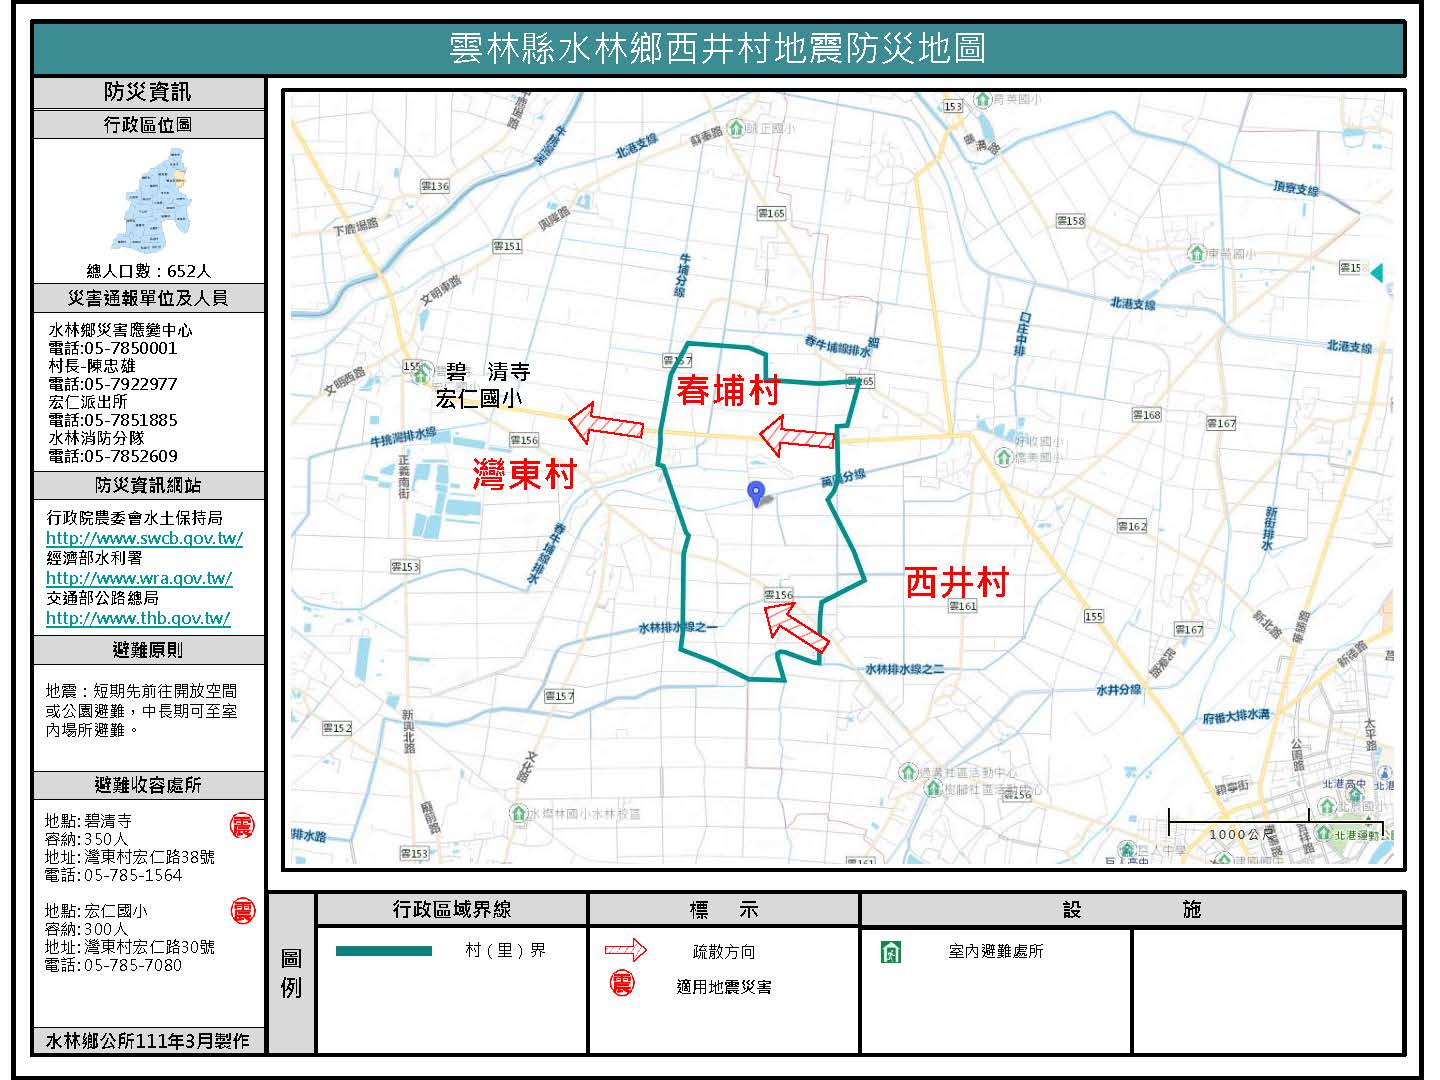 西井村地震防災地圖